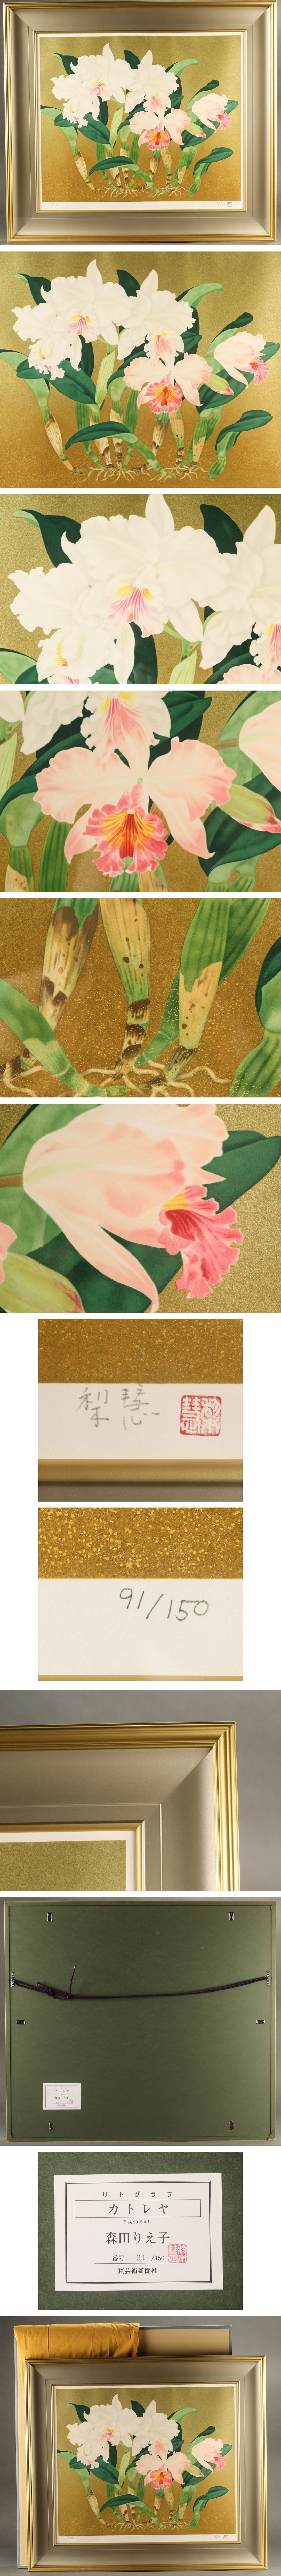 買蔵楽天森田りえ子 リトグラフ 「カトリヤ」 91/150 KI326 石版画、リトグラフ